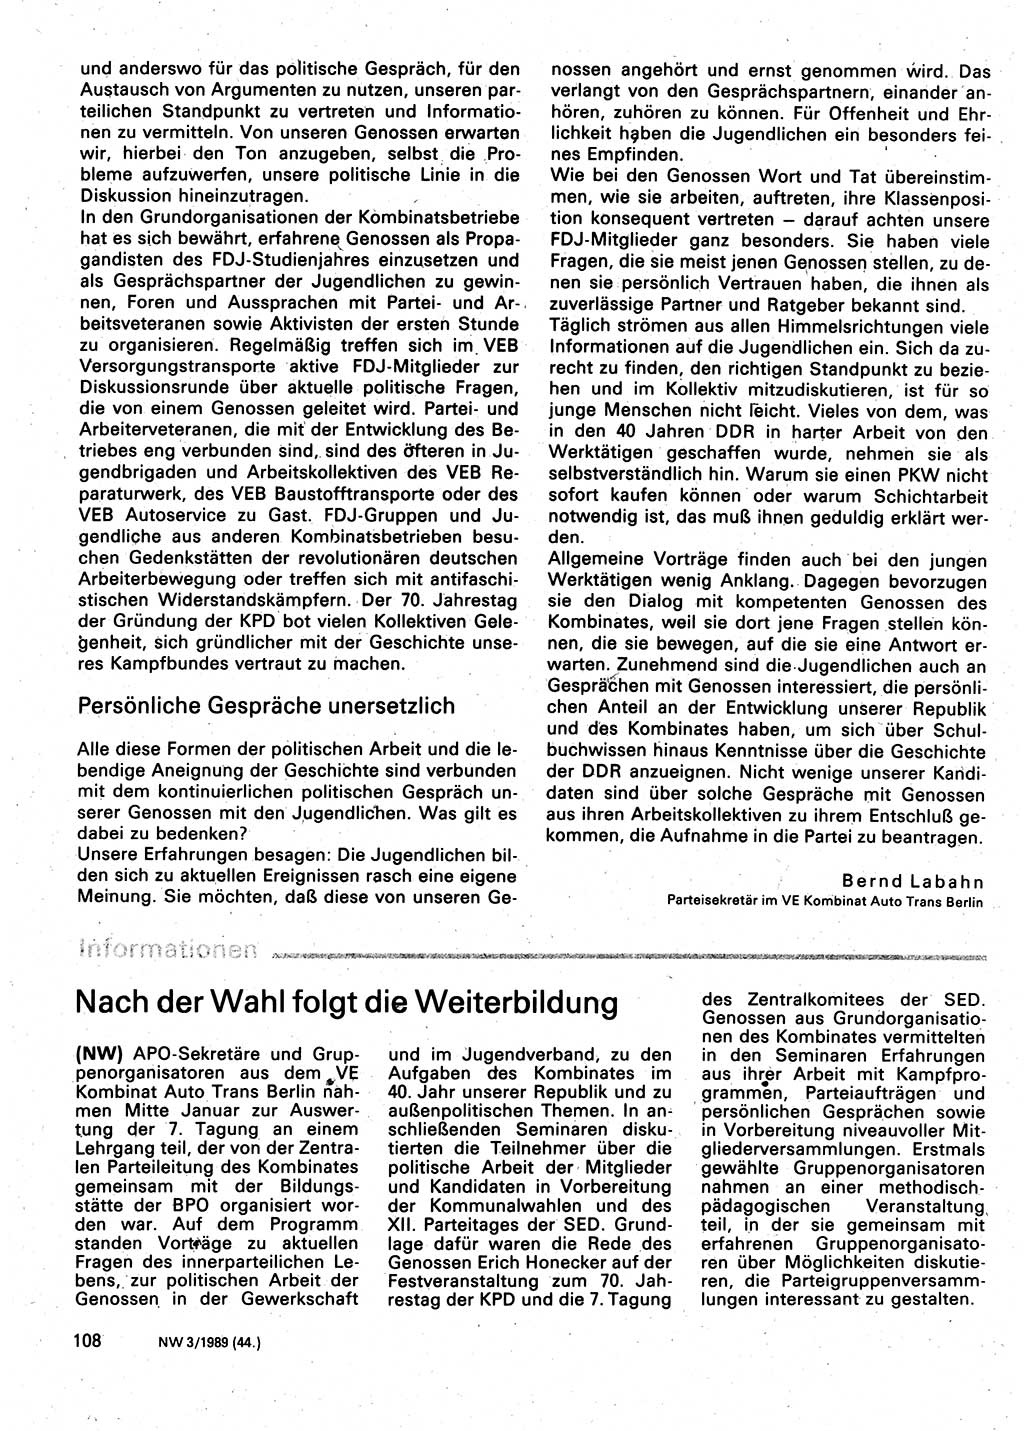 Neuer Weg (NW), Organ des Zentralkomitees (ZK) der SED (Sozialistische Einheitspartei Deutschlands) für Fragen des Parteilebens, 44. Jahrgang [Deutsche Demokratische Republik (DDR)] 1989, Seite 108 (NW ZK SED DDR 1989, S. 108)